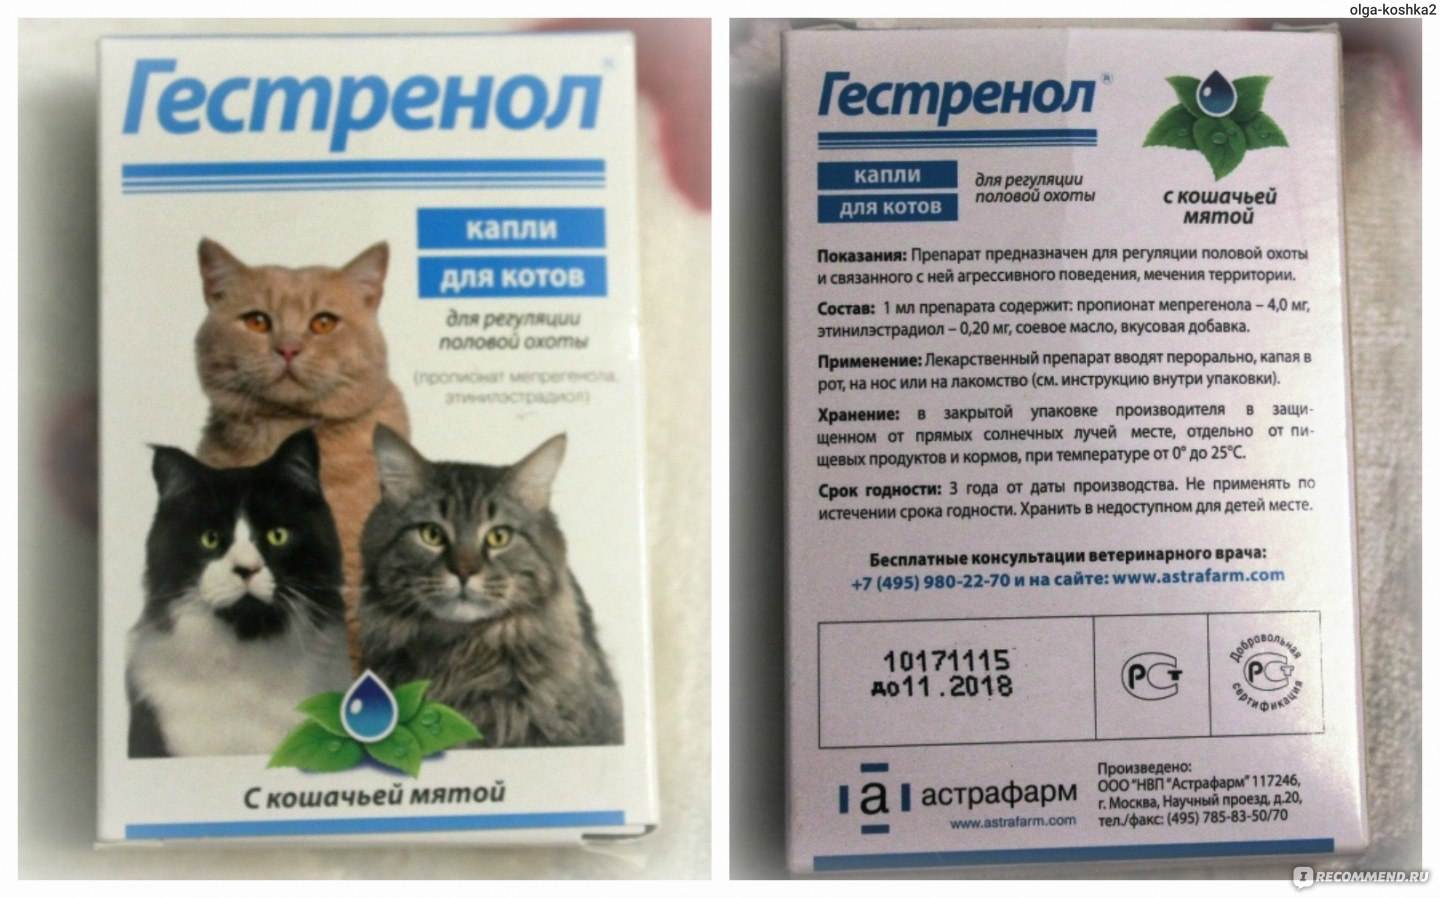 Применение лекарства корнам для лечения котов